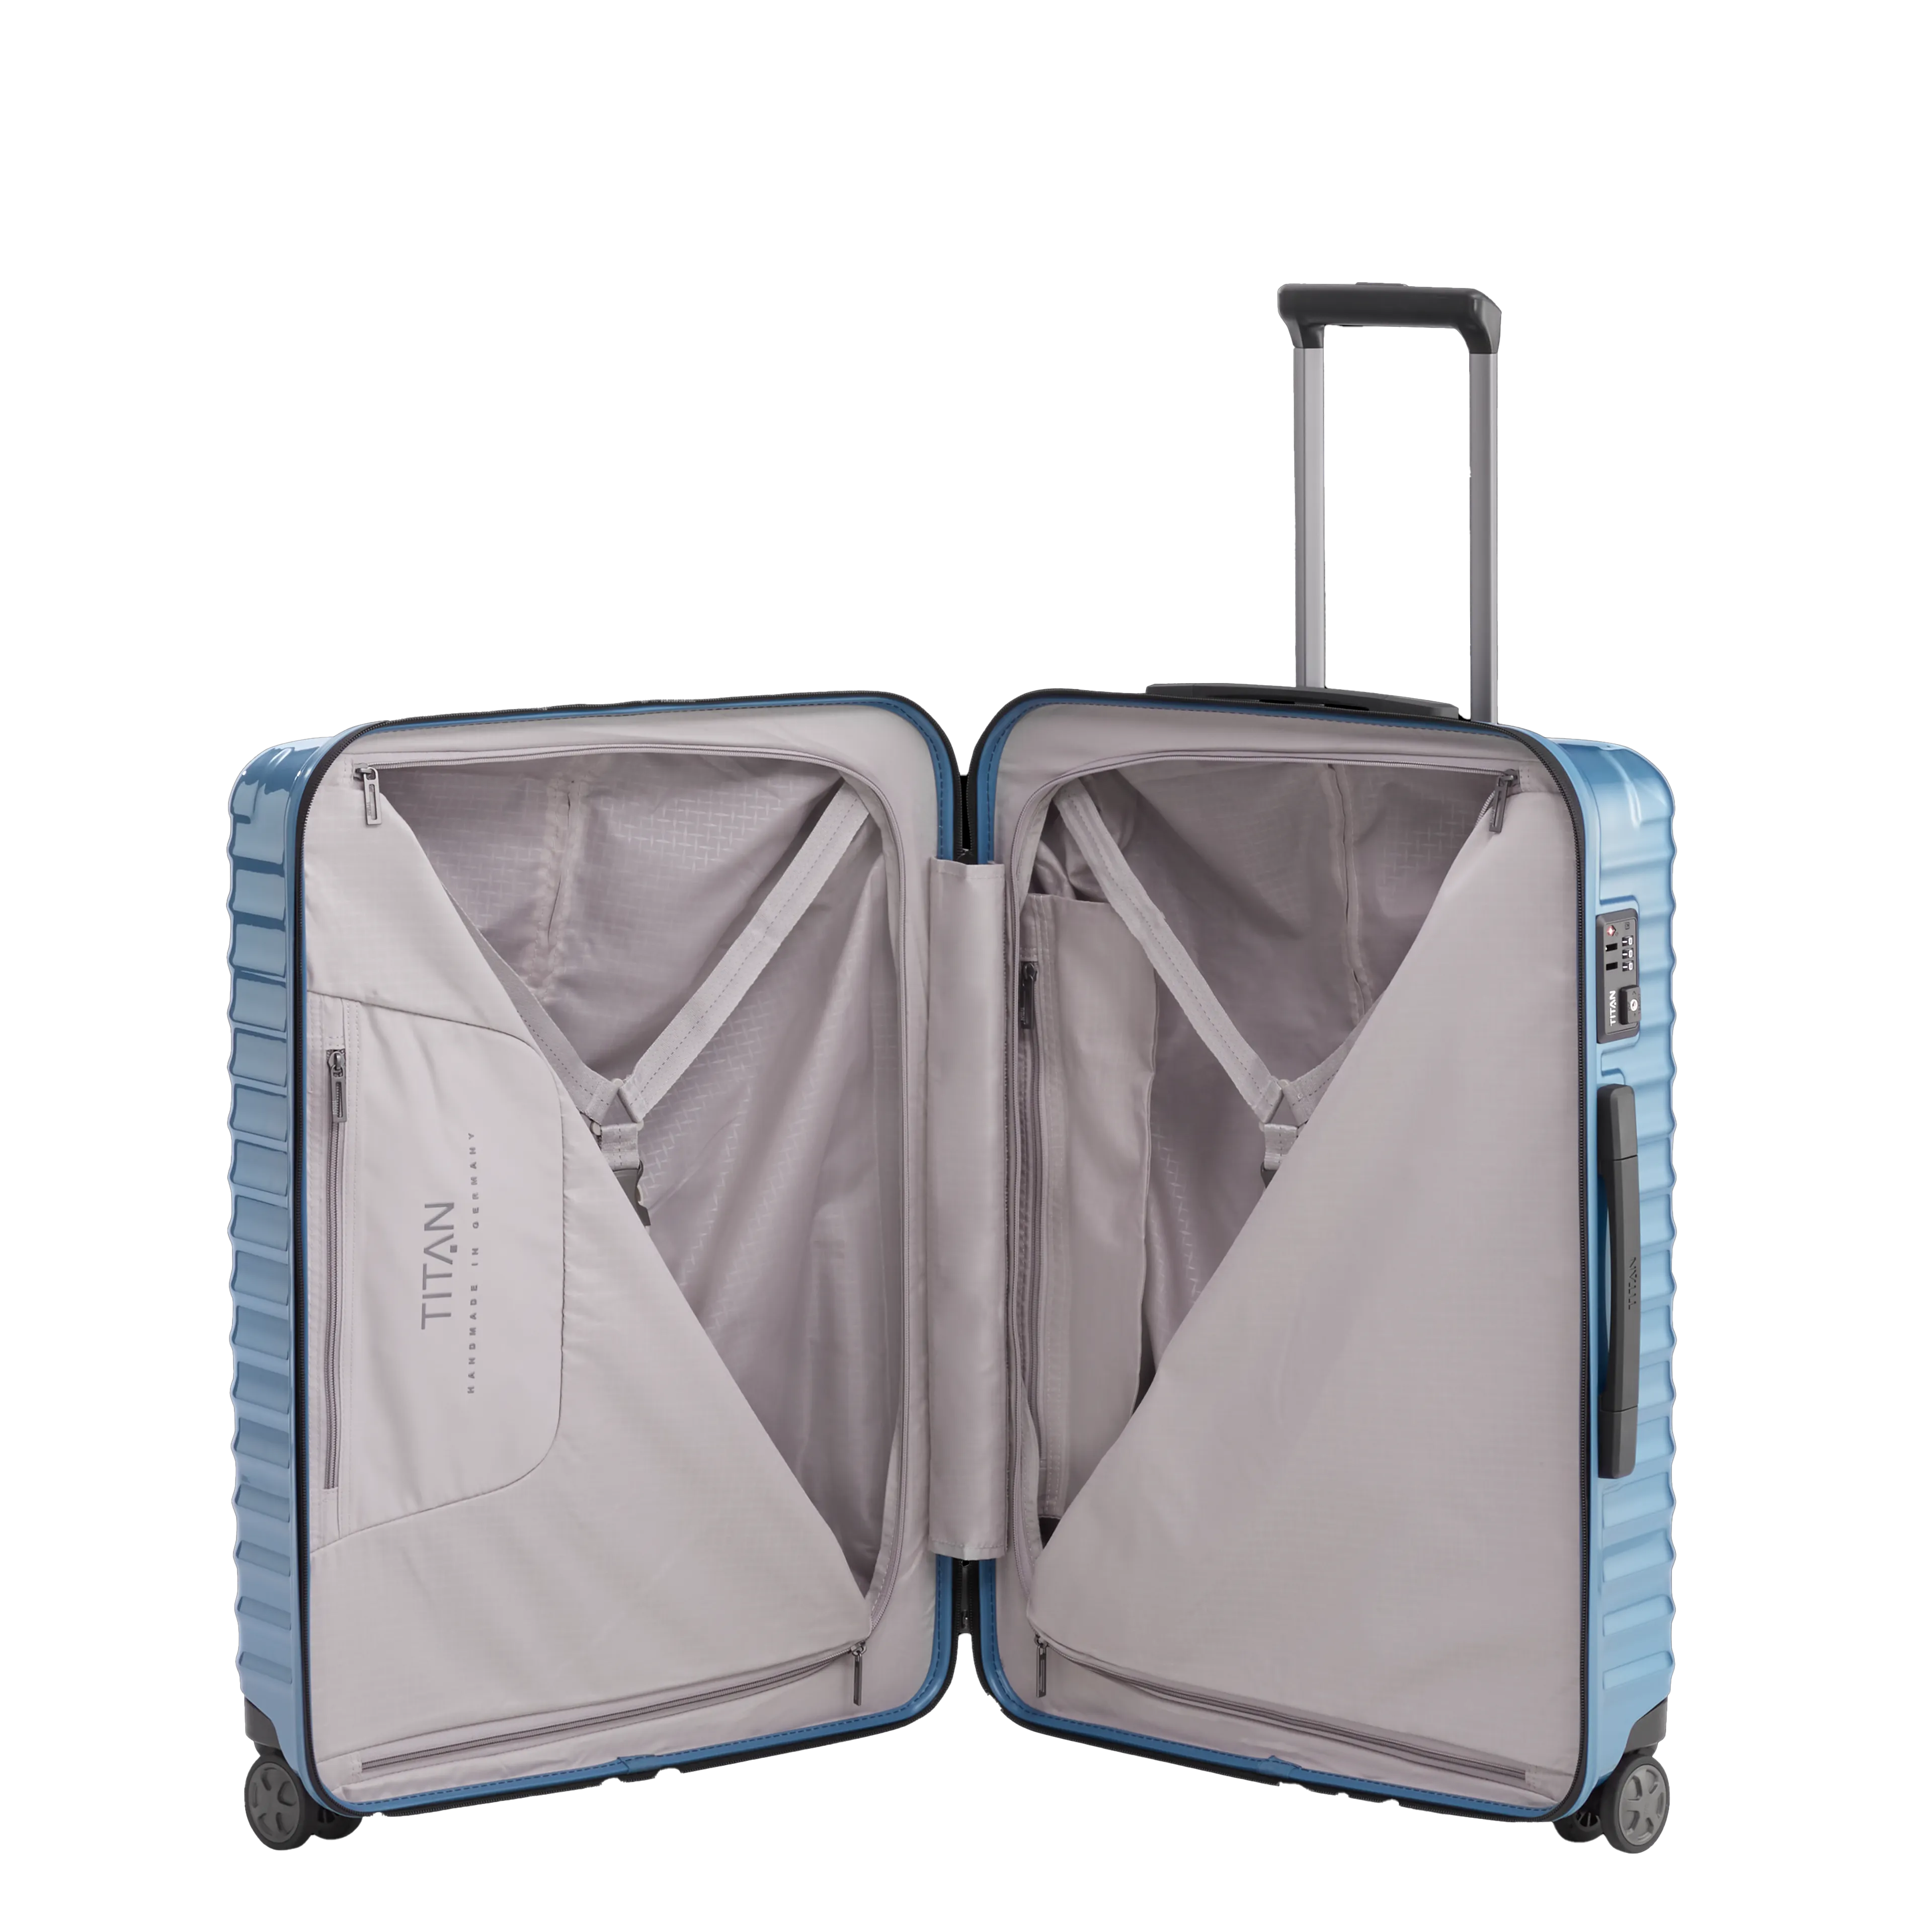 Ein TITAN Koffer der Serie LITRON Innenansicht in eisblau Größe M 69cm